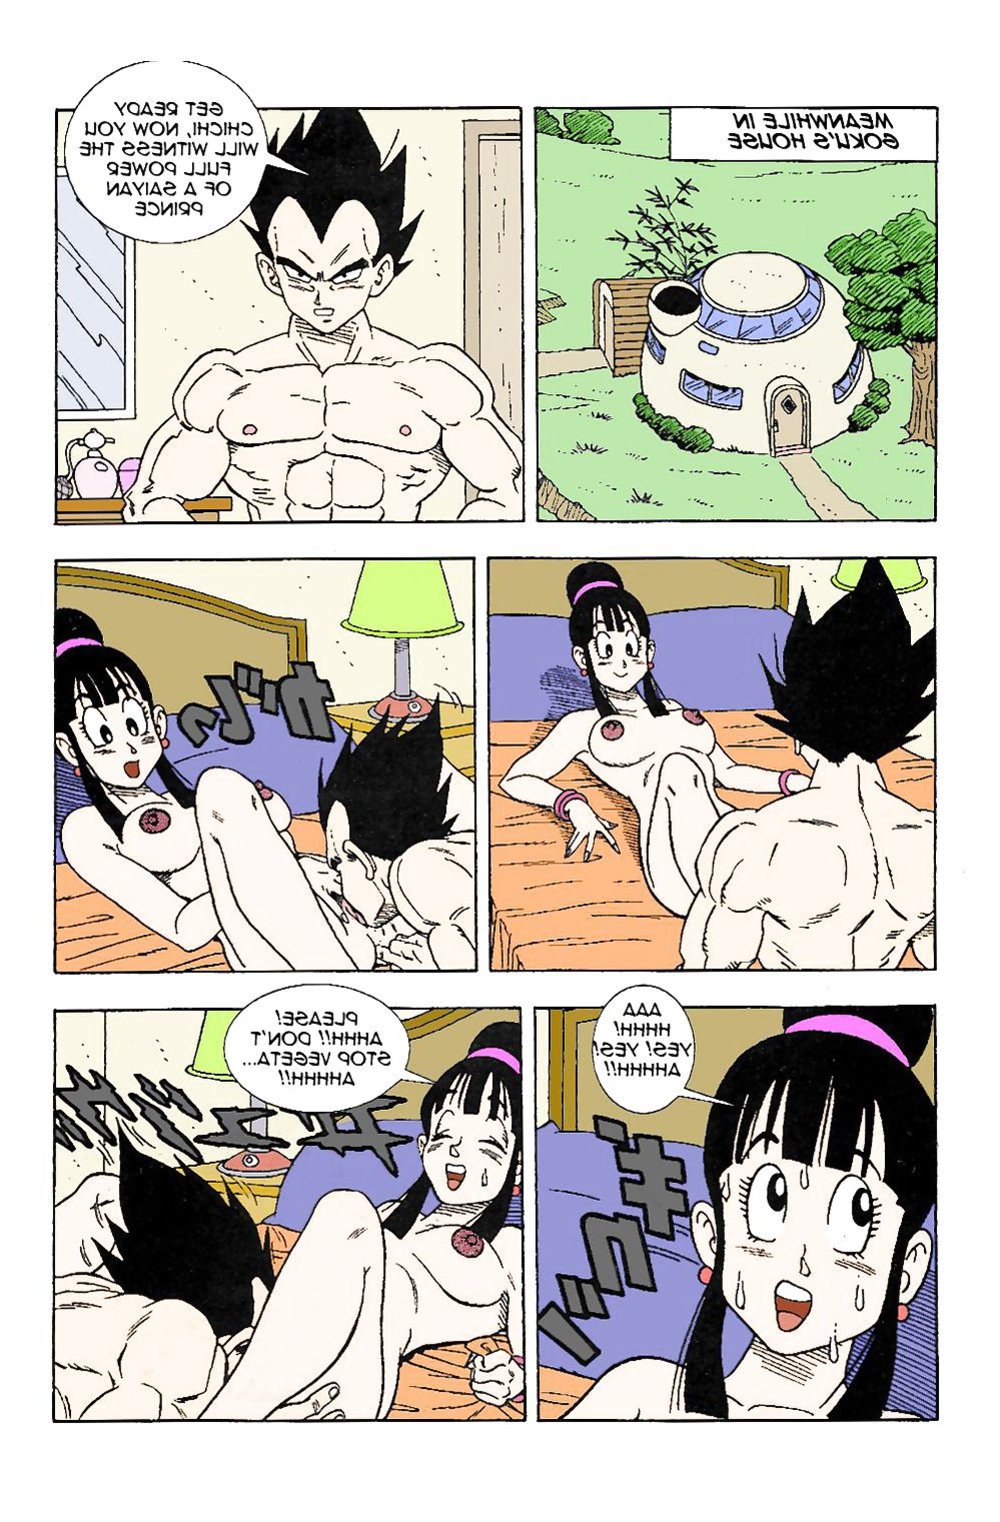 Dbz Vegeta Porks Gokus Wifey Chichi Zb Porn 6371